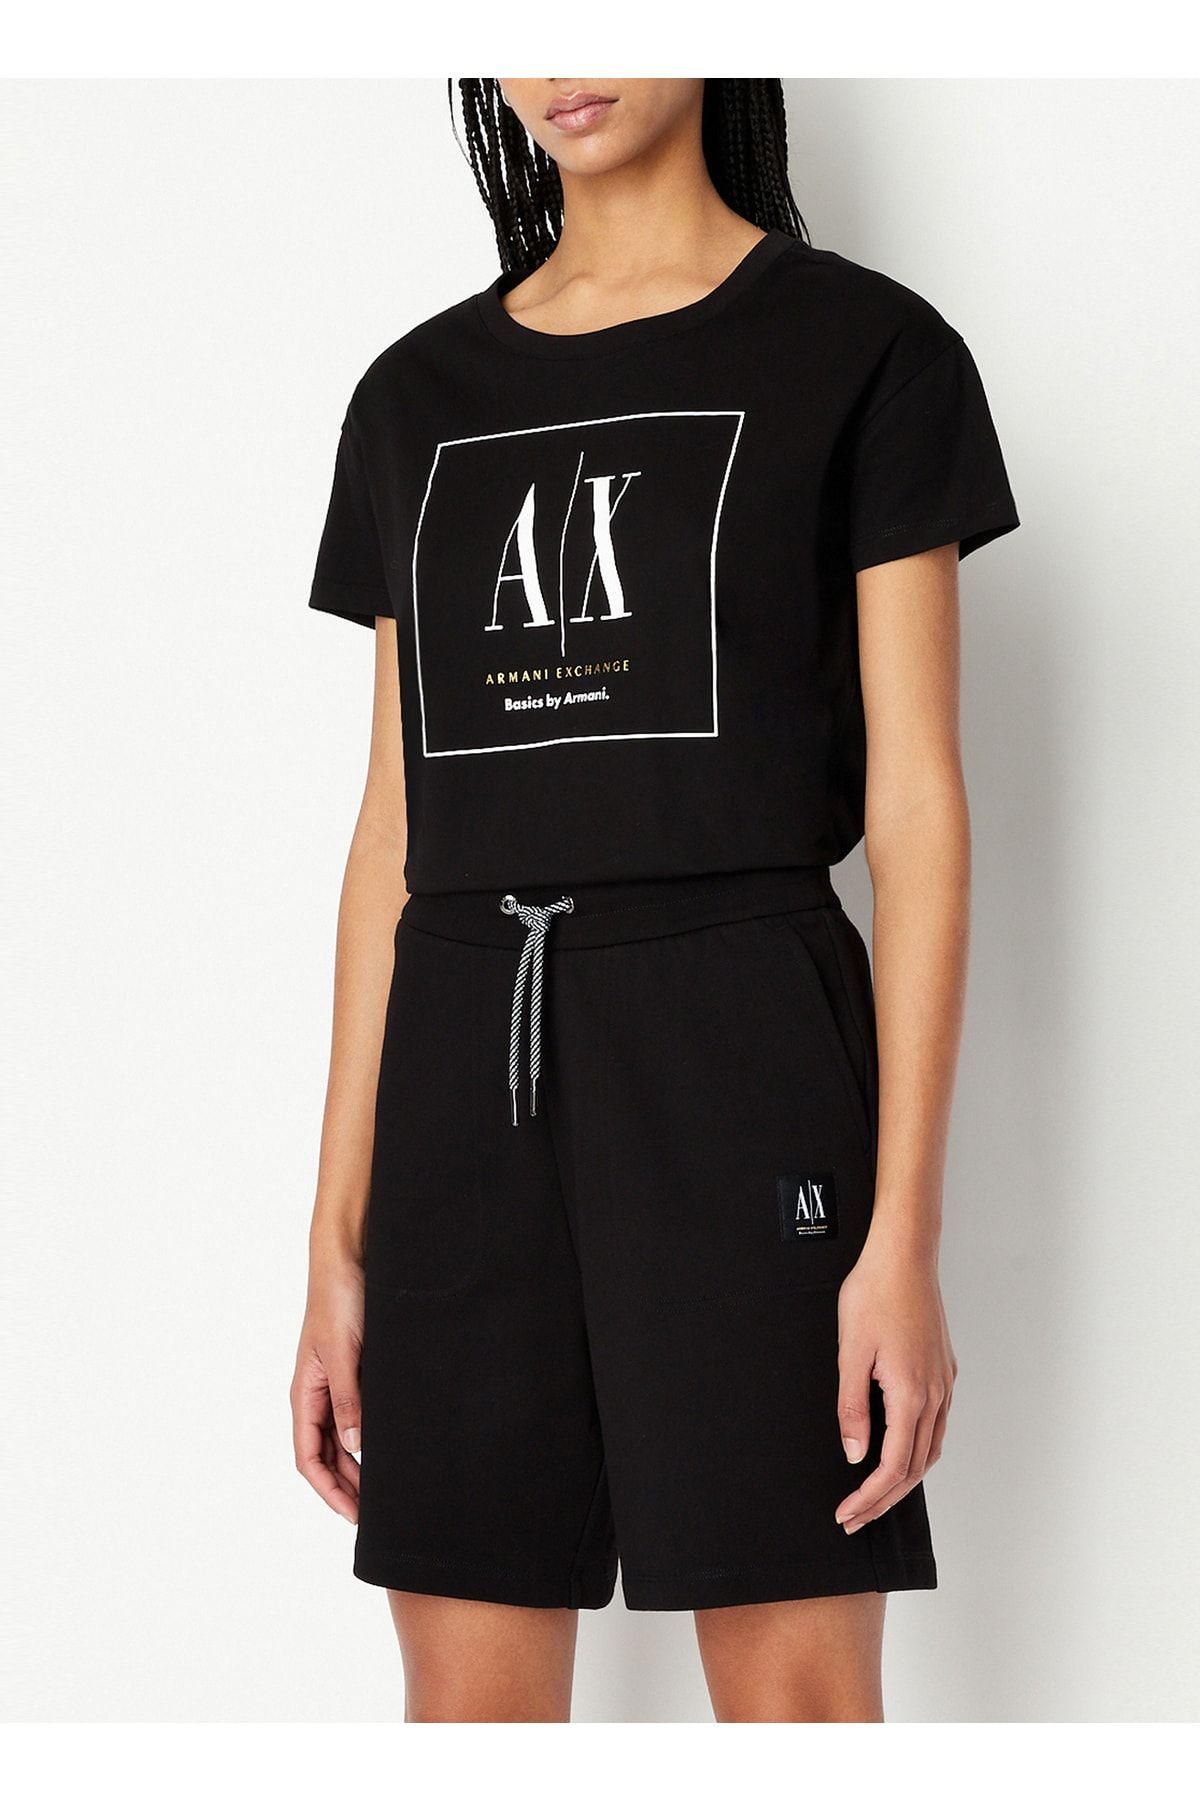 Armani Exchange Baskılı Siyah Kadın T-shirt 3rytfl